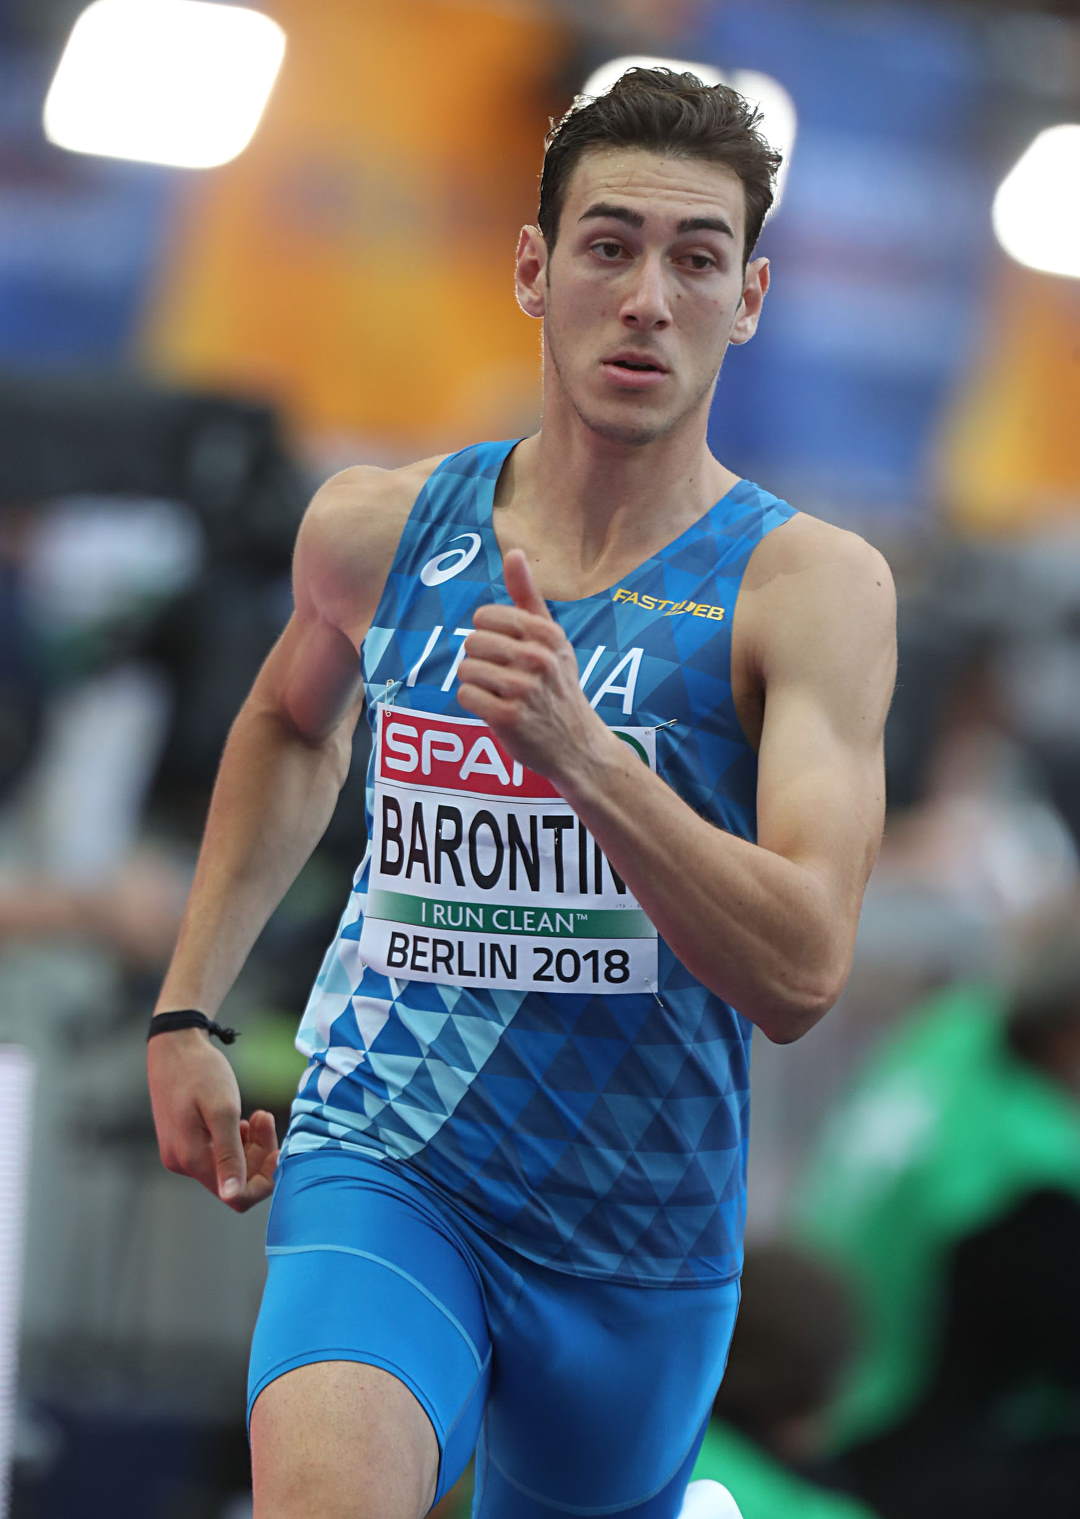 Barontini ok nei 400, giovani record a Macerata